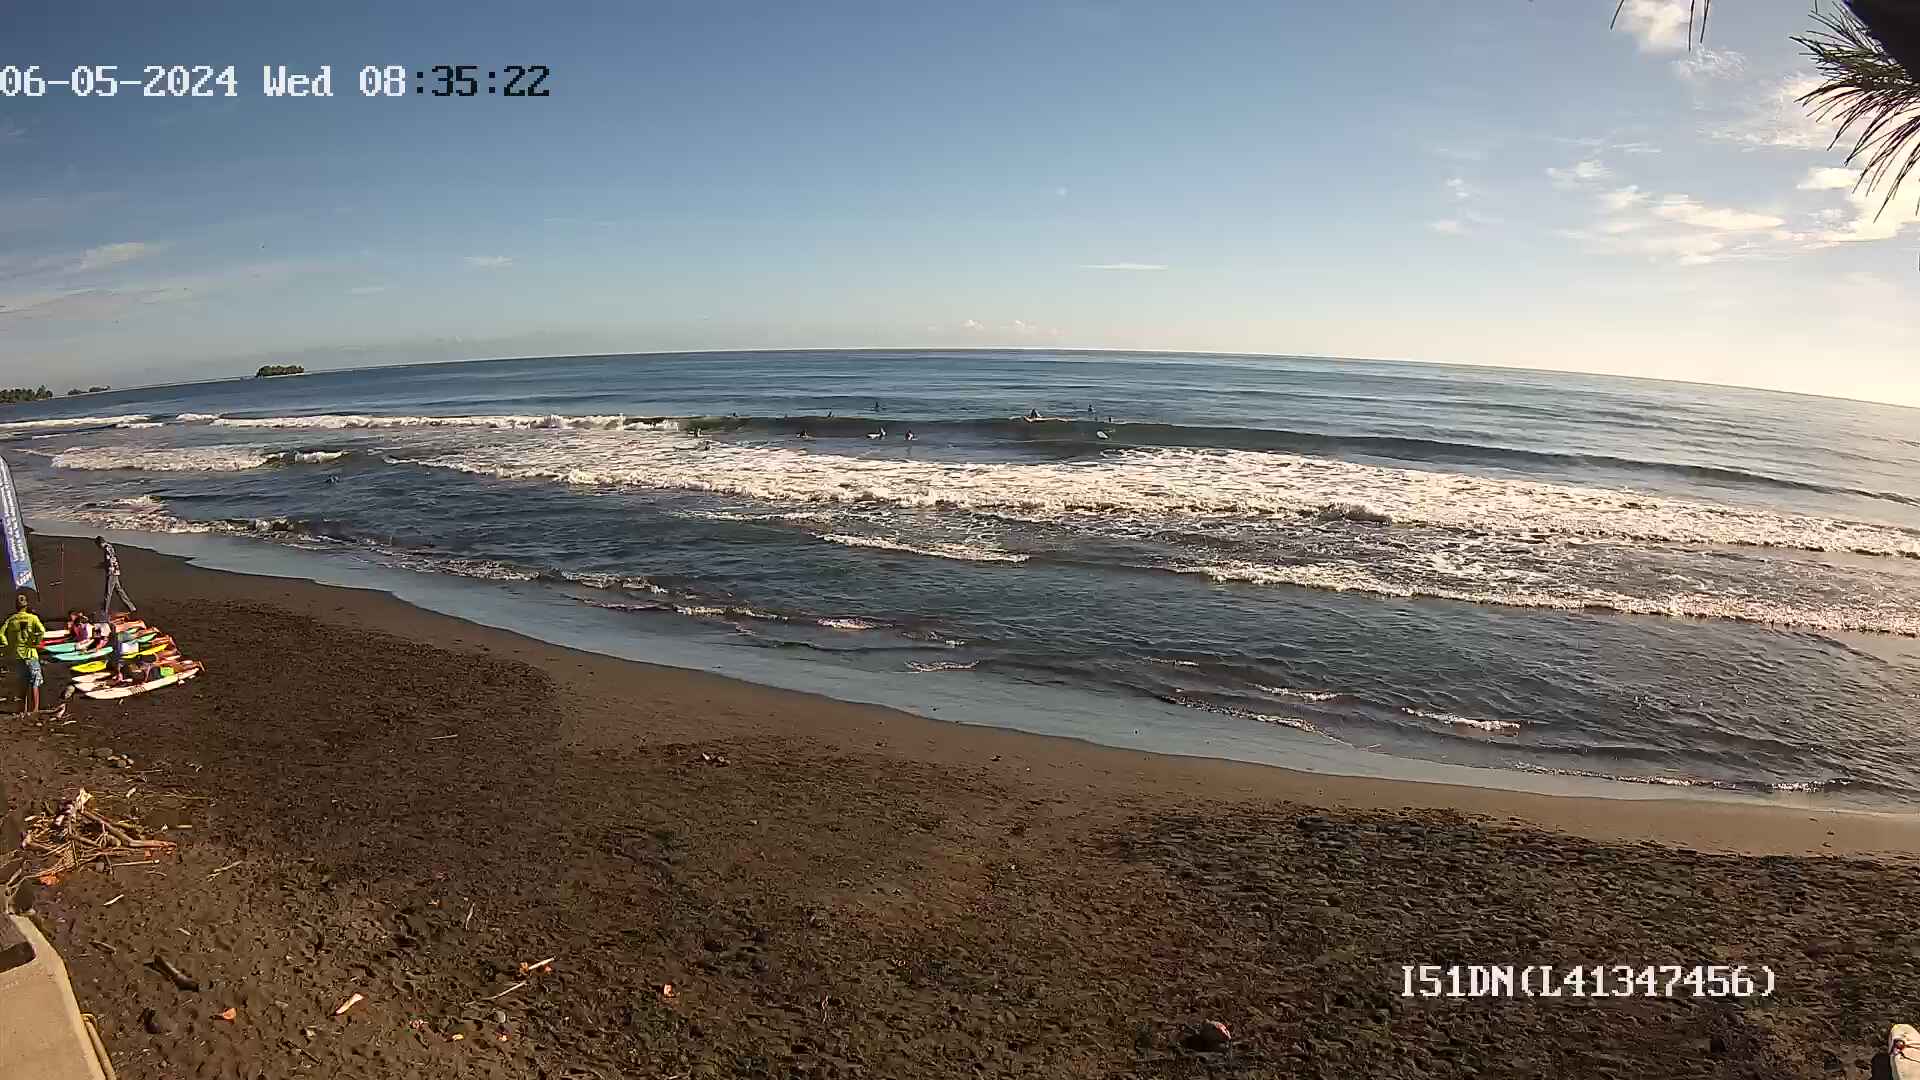 Mahina (Tahiti) Mer. 08:35